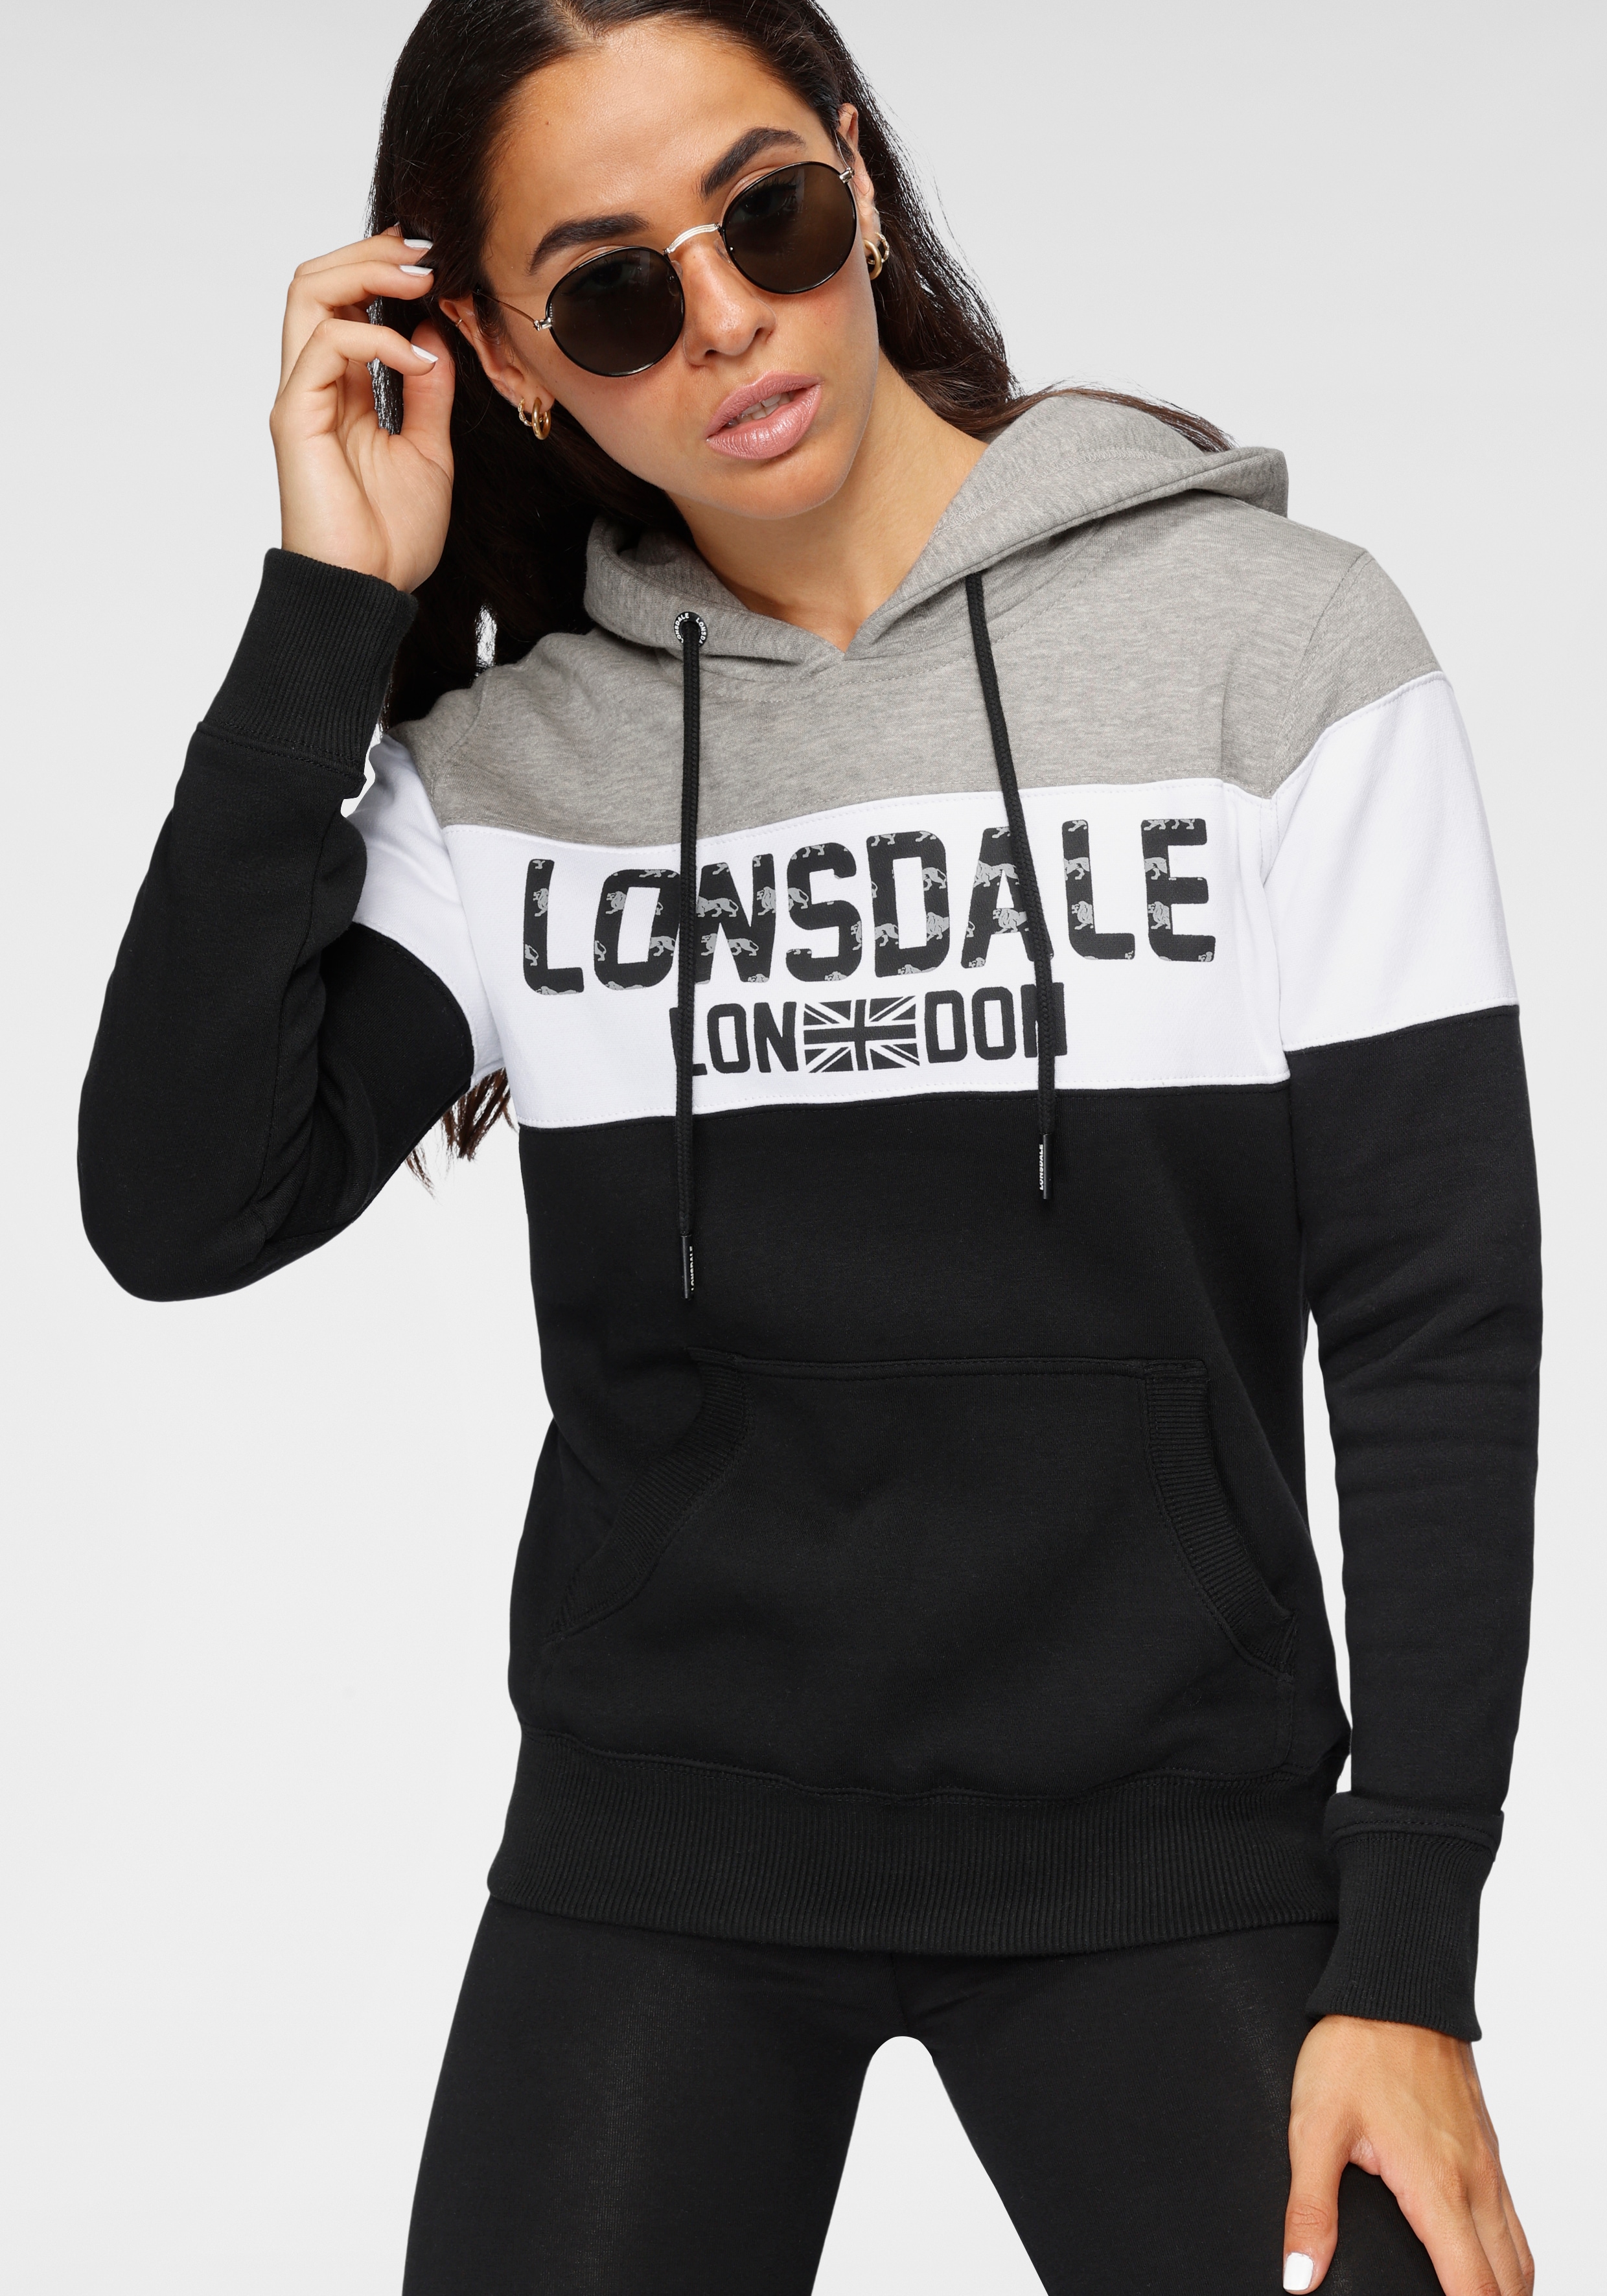 Lonsdale Womens Sleeve Hooded Sweatshirt, Black, Large